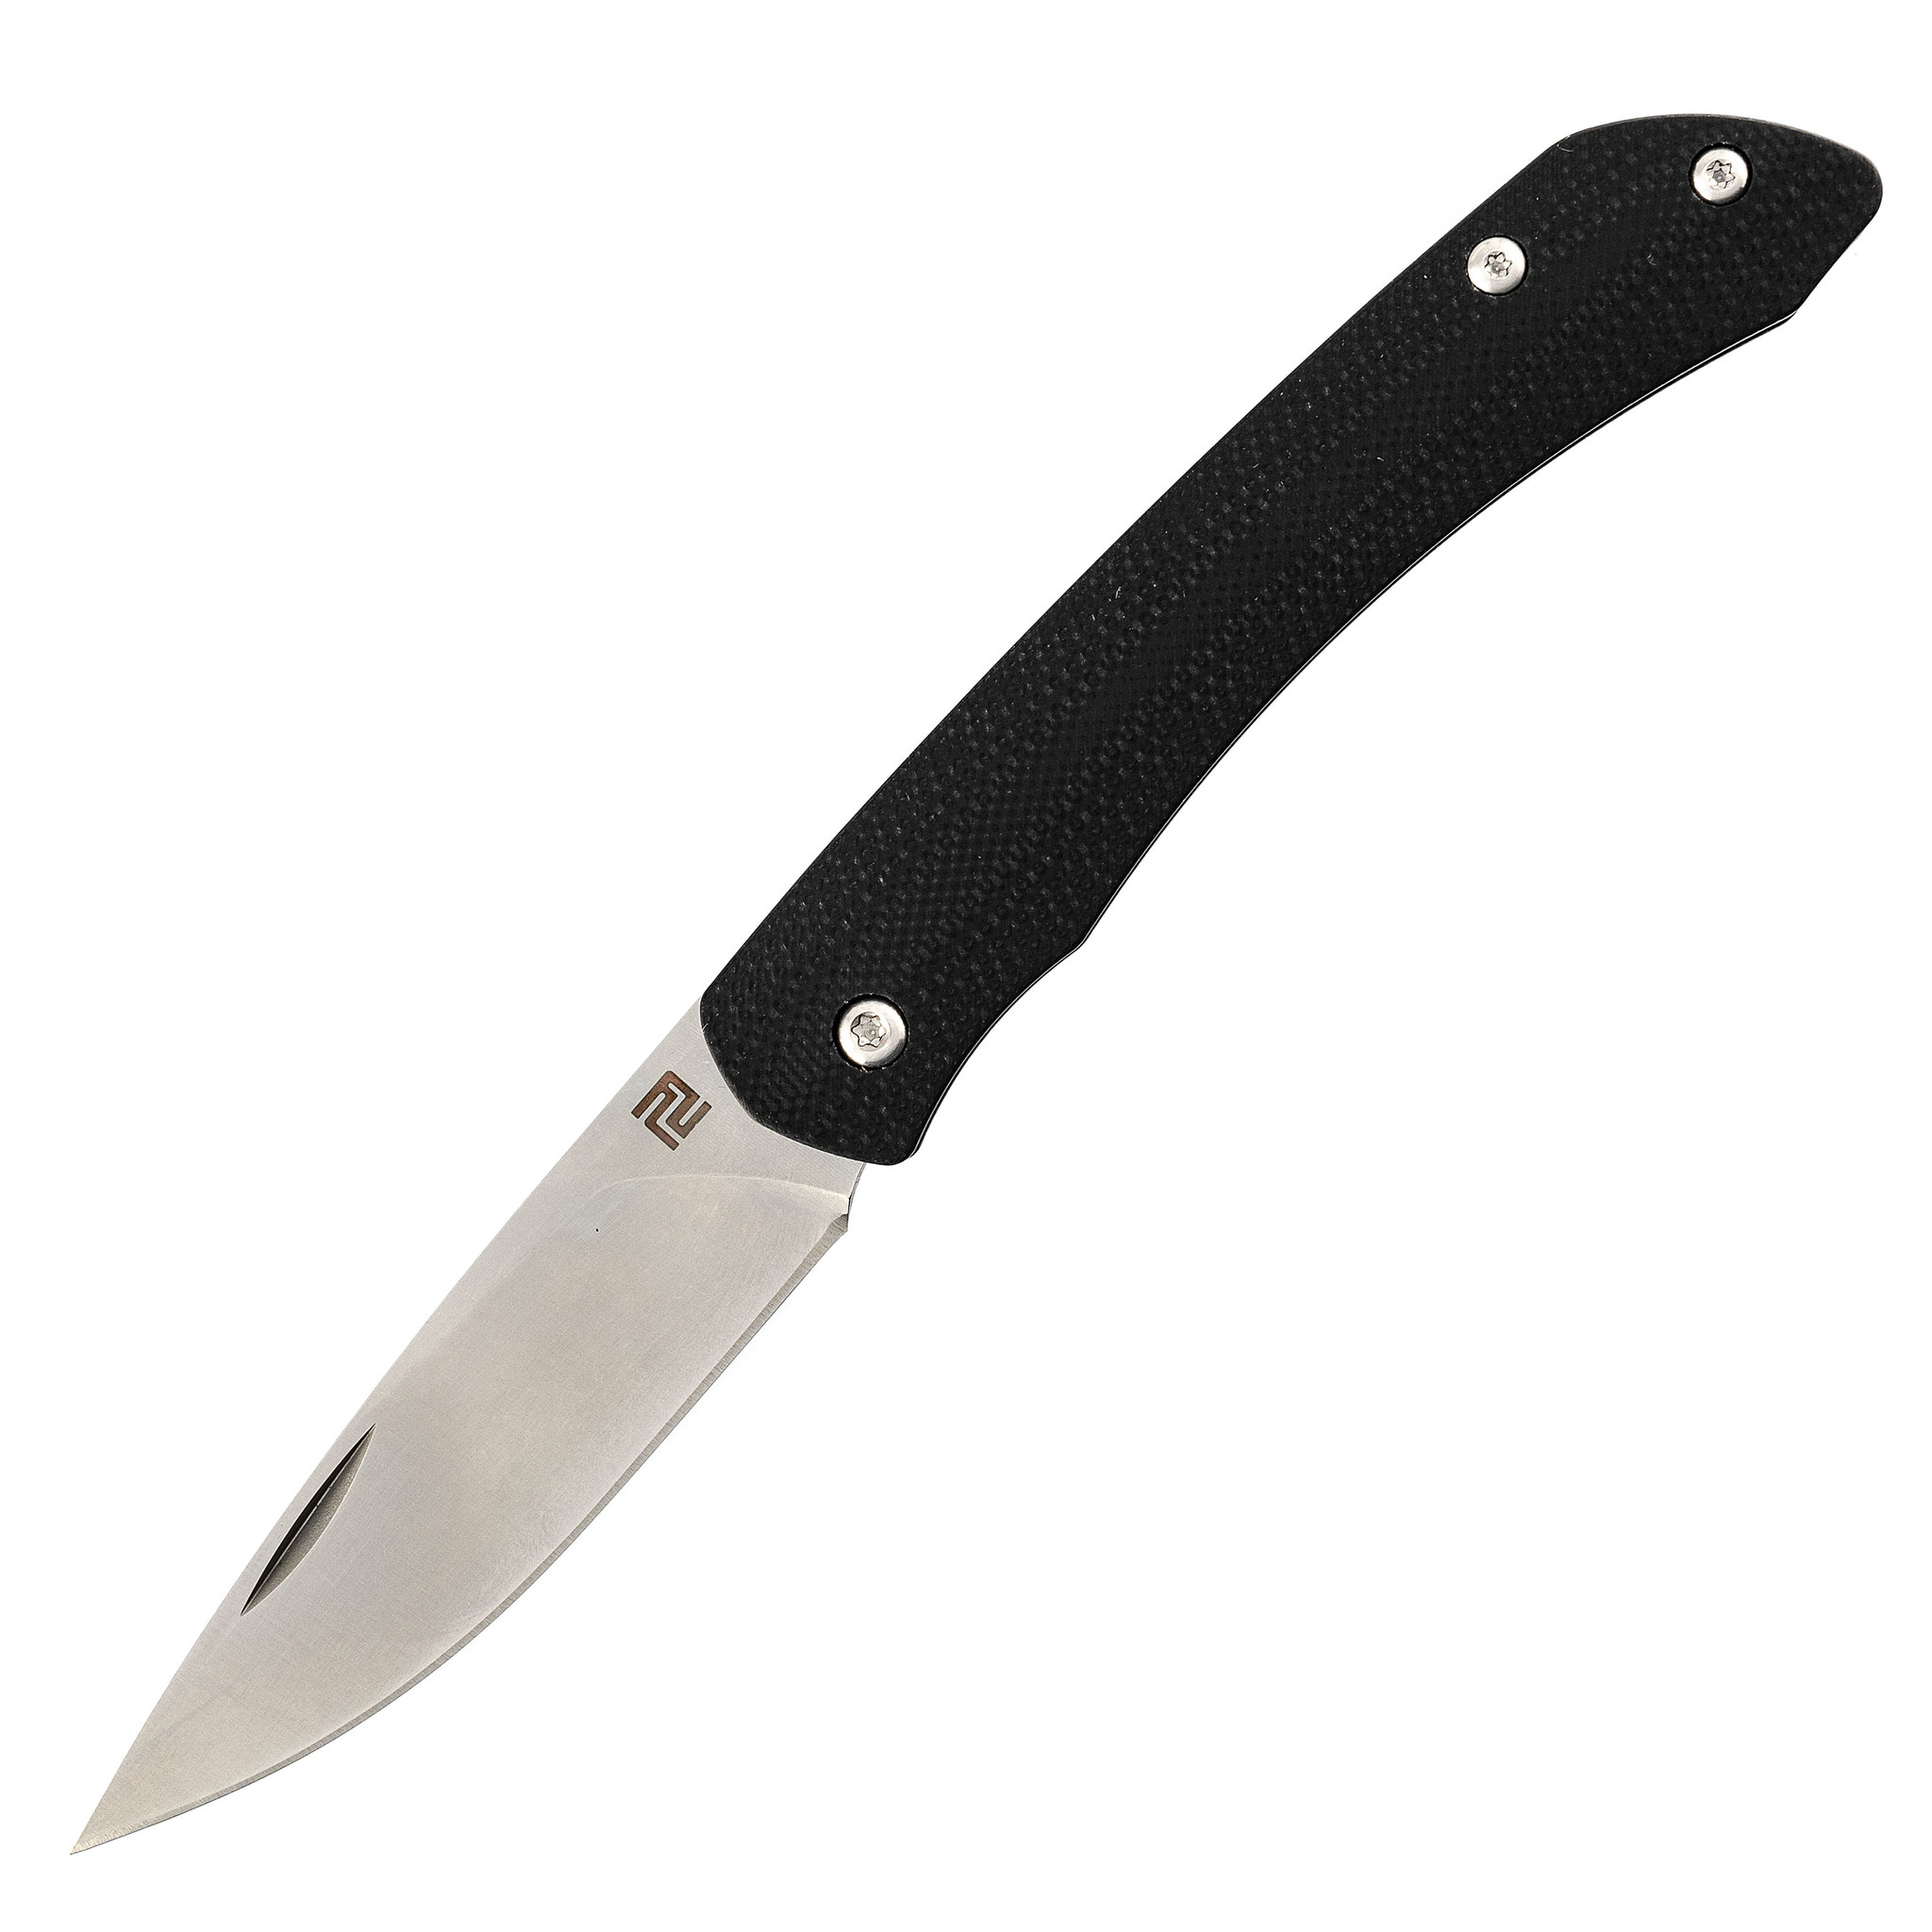 Складной нож Artisan Biome, сталь Sandvik 12C27N, G10